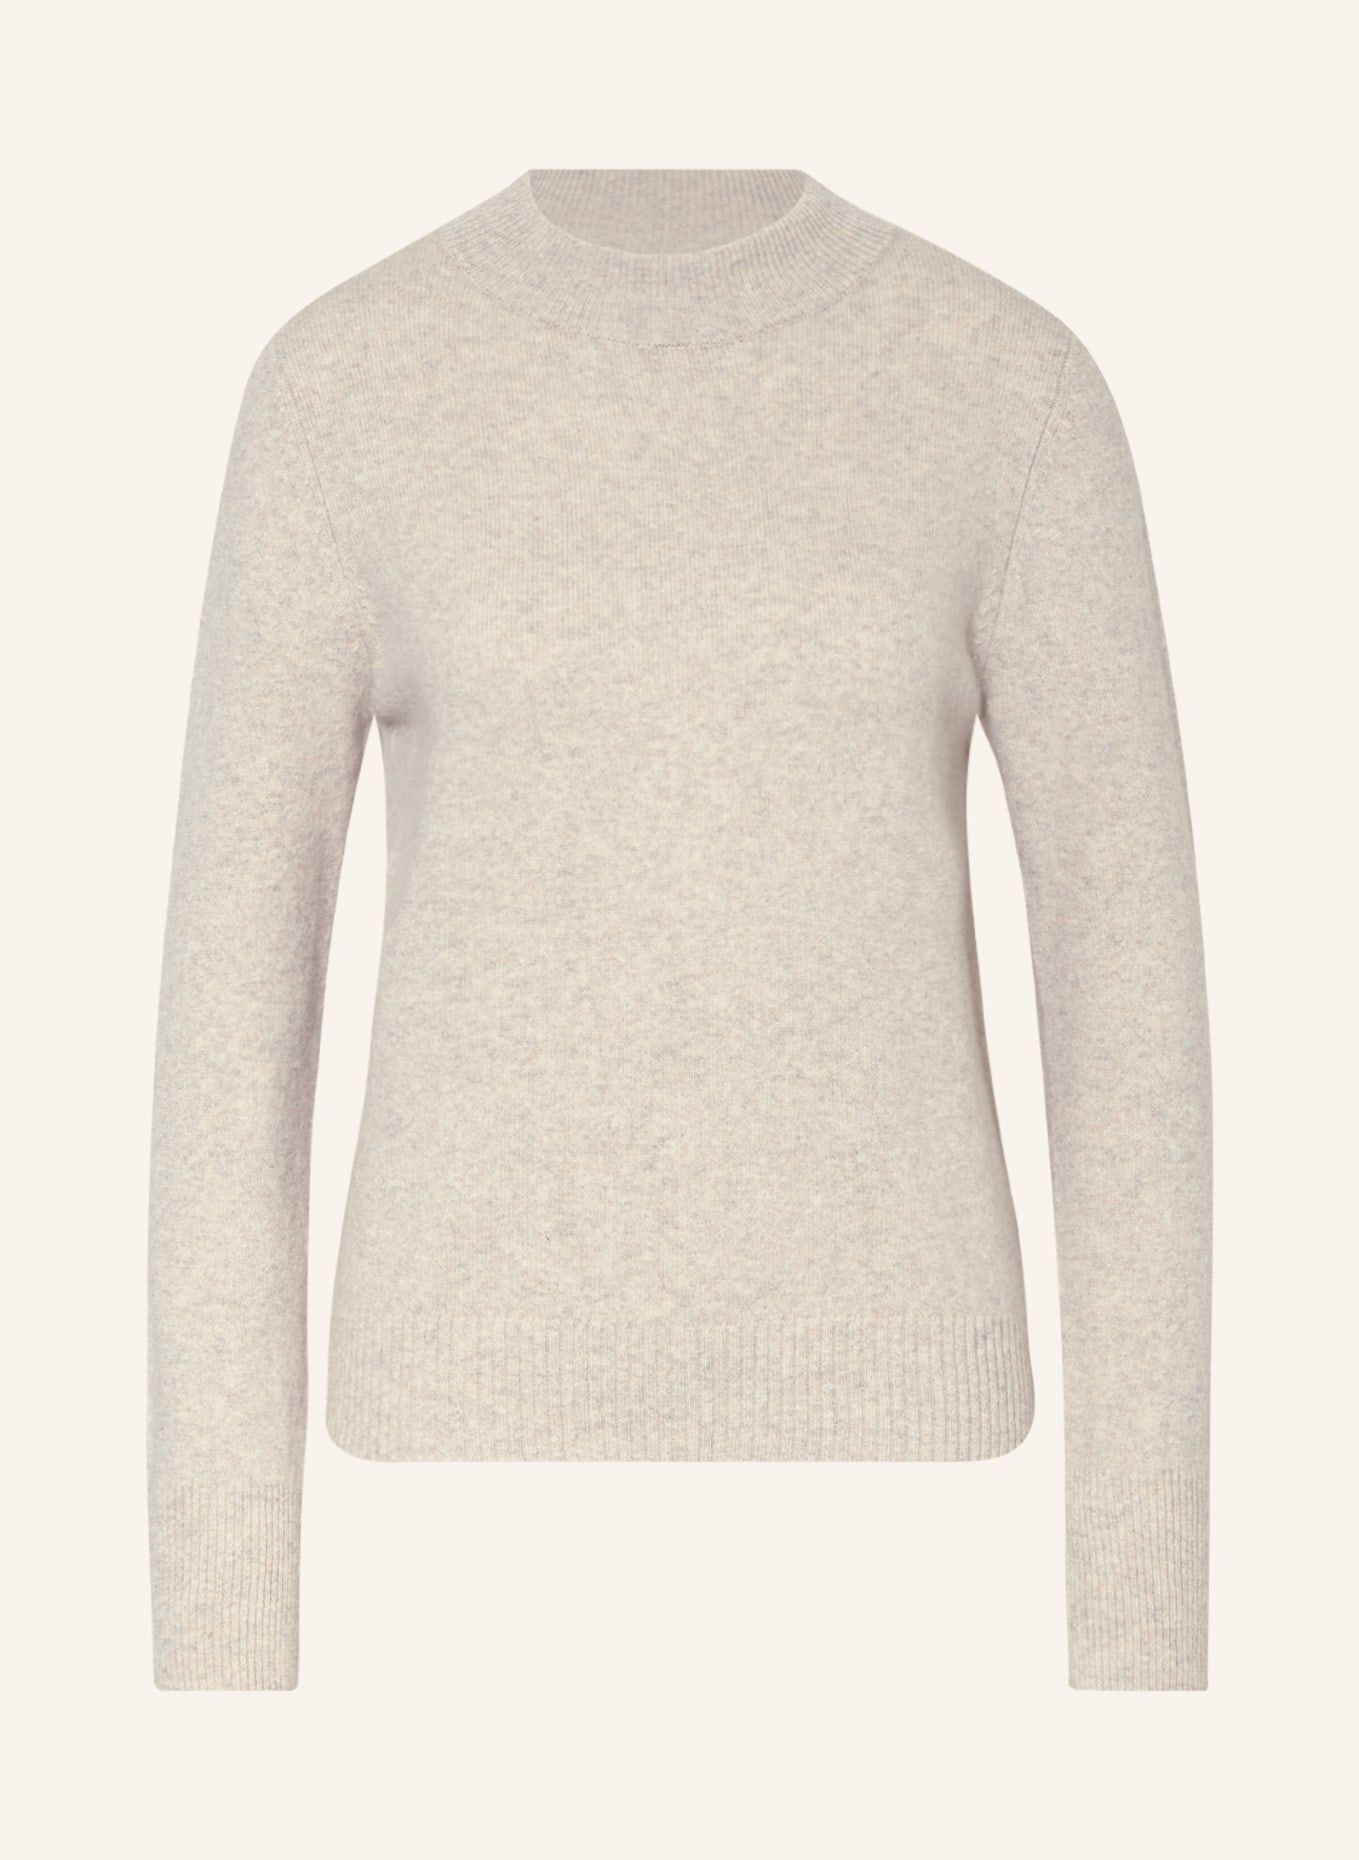 HEMISPHERE Cashmere sweater, Color: CREAM (Image 1)